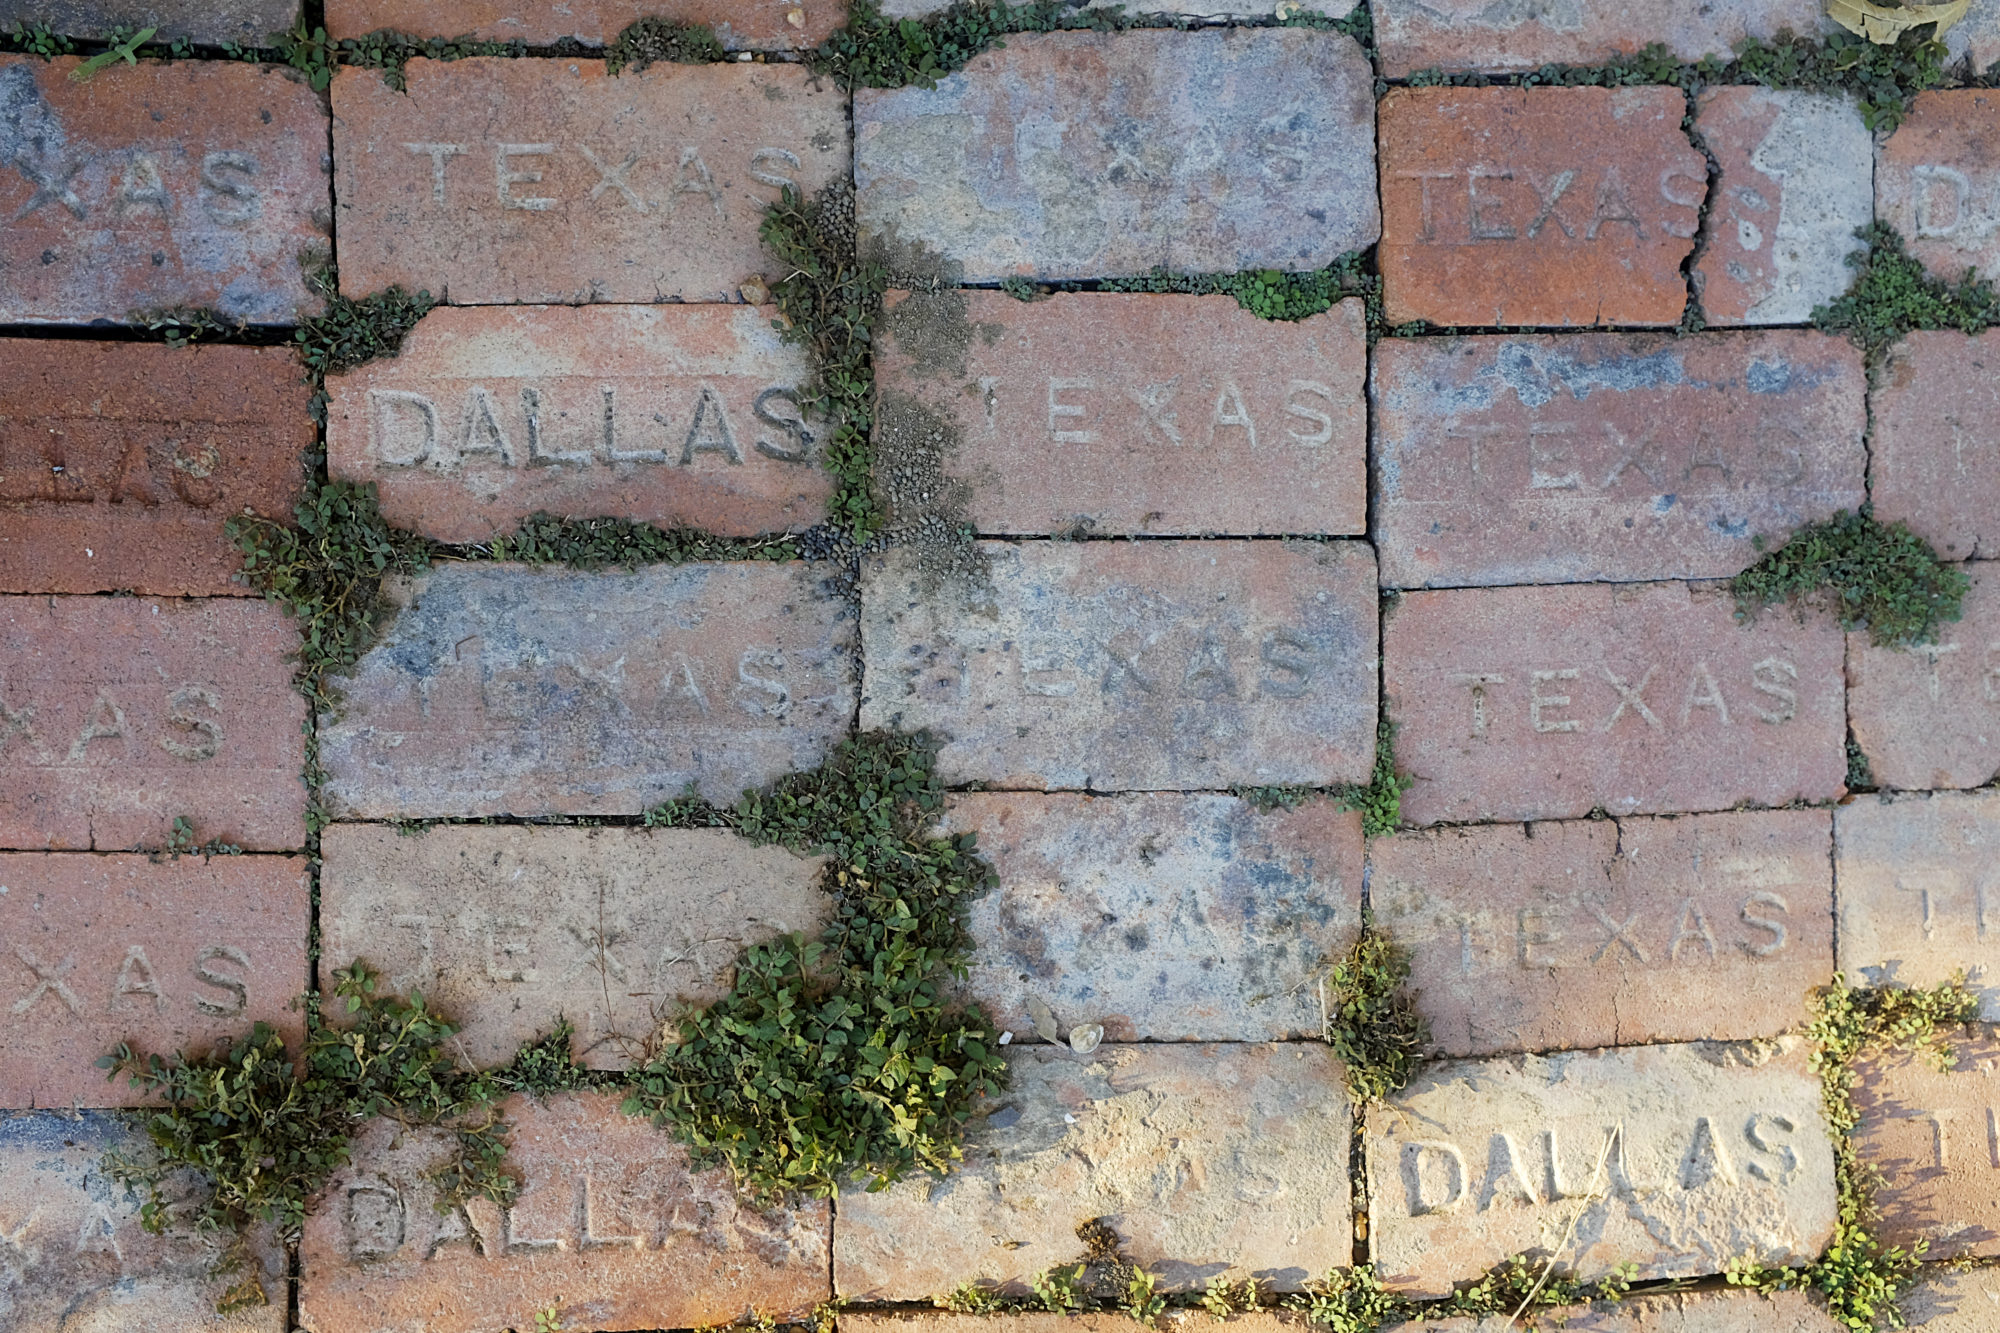 Bricks on a sidewalk that say Dallas Texas